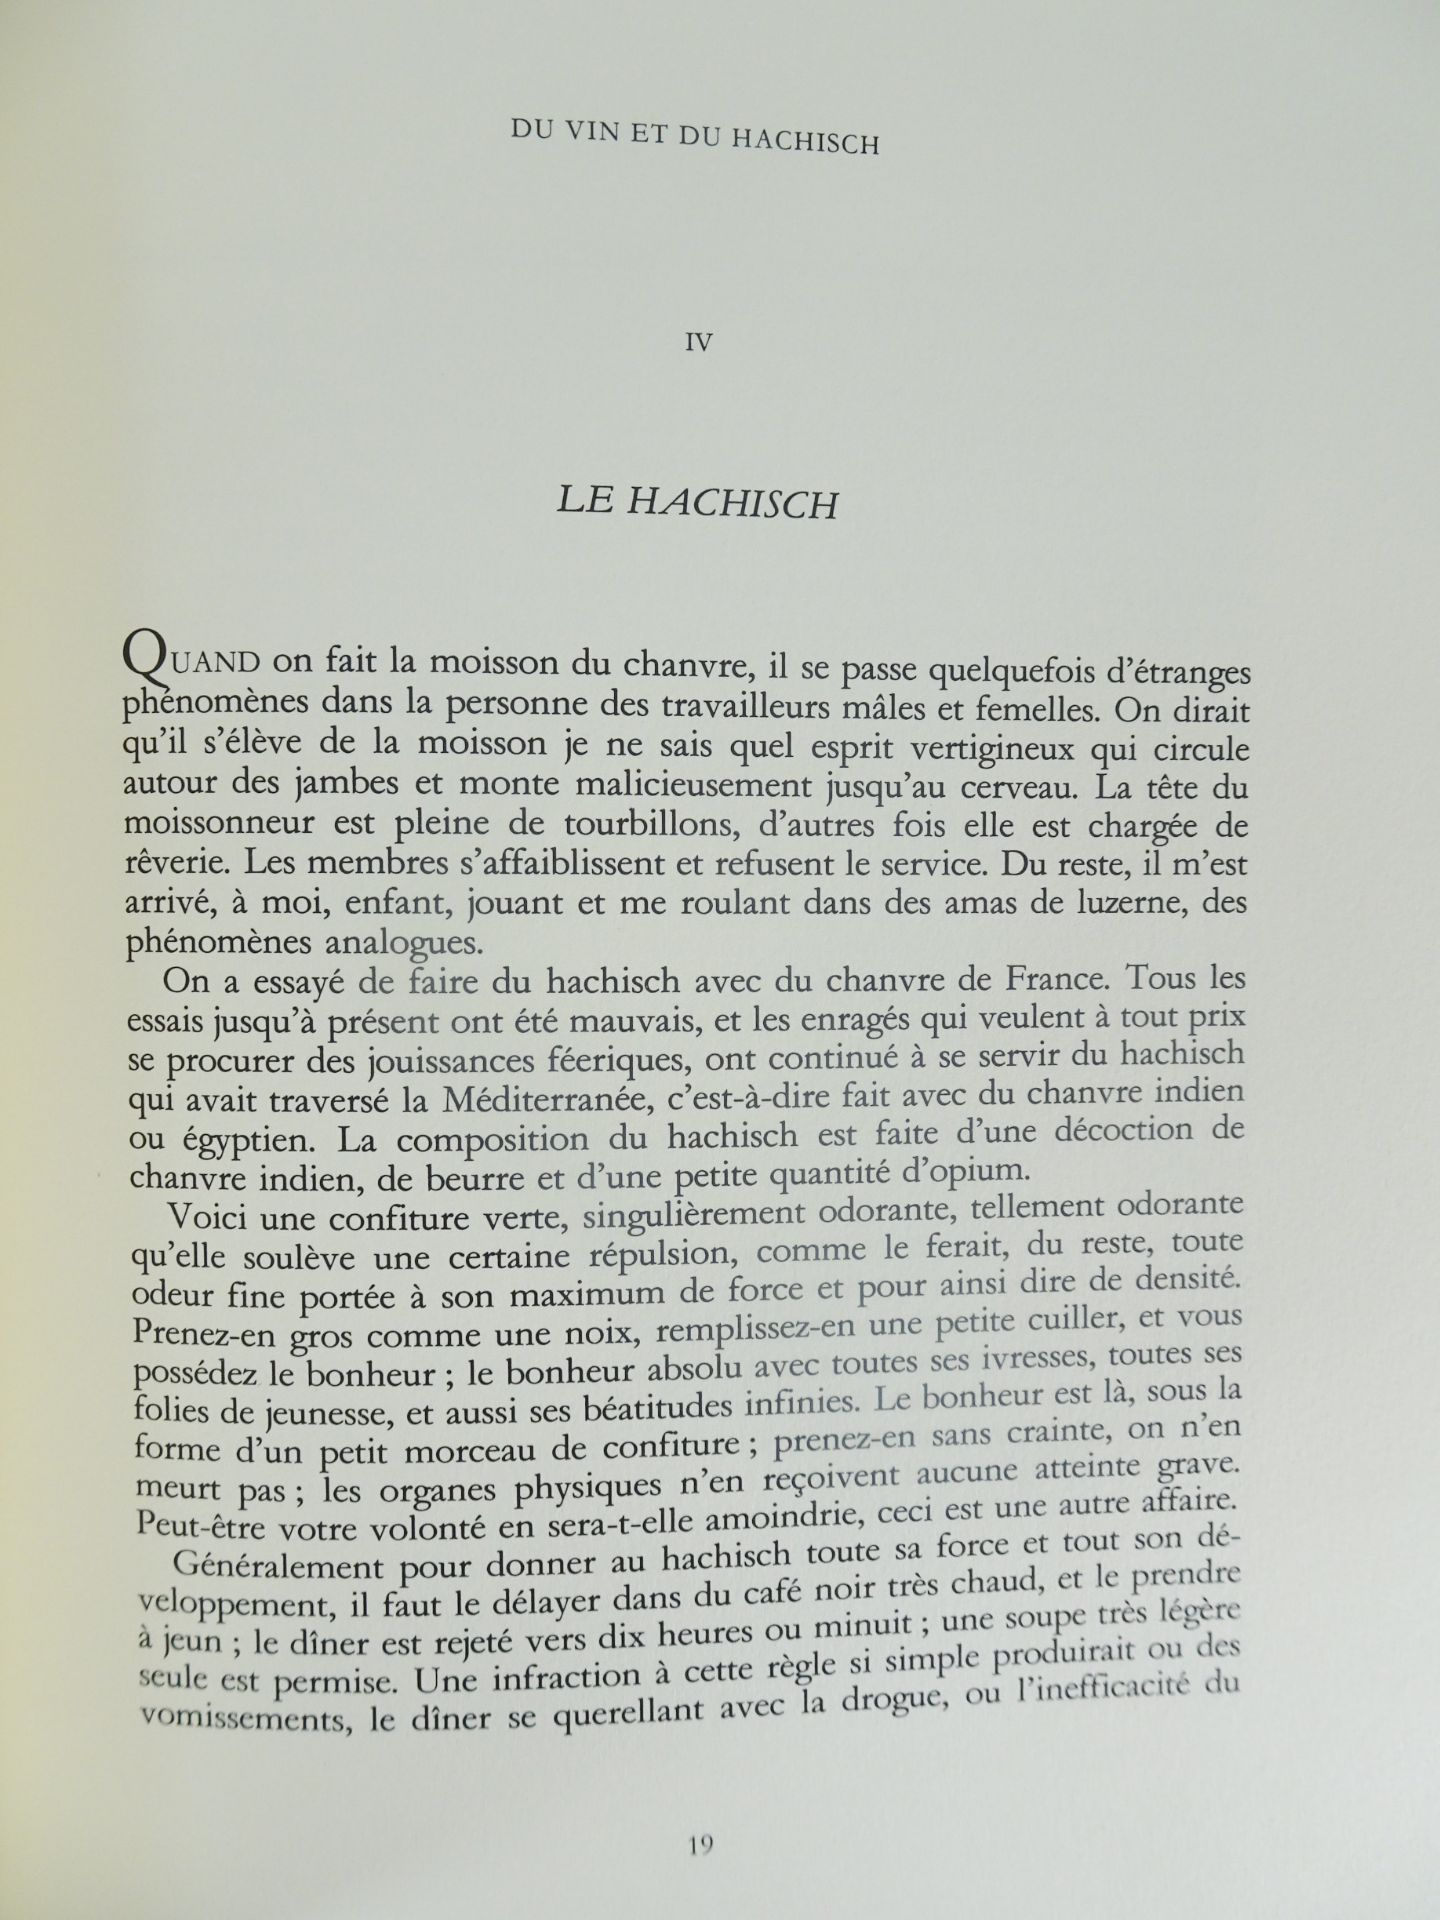 |Littérature| Baudelaire Charles, "Ouvres complètes", 1986 - édition de luxe limité - Bild 19 aus 21